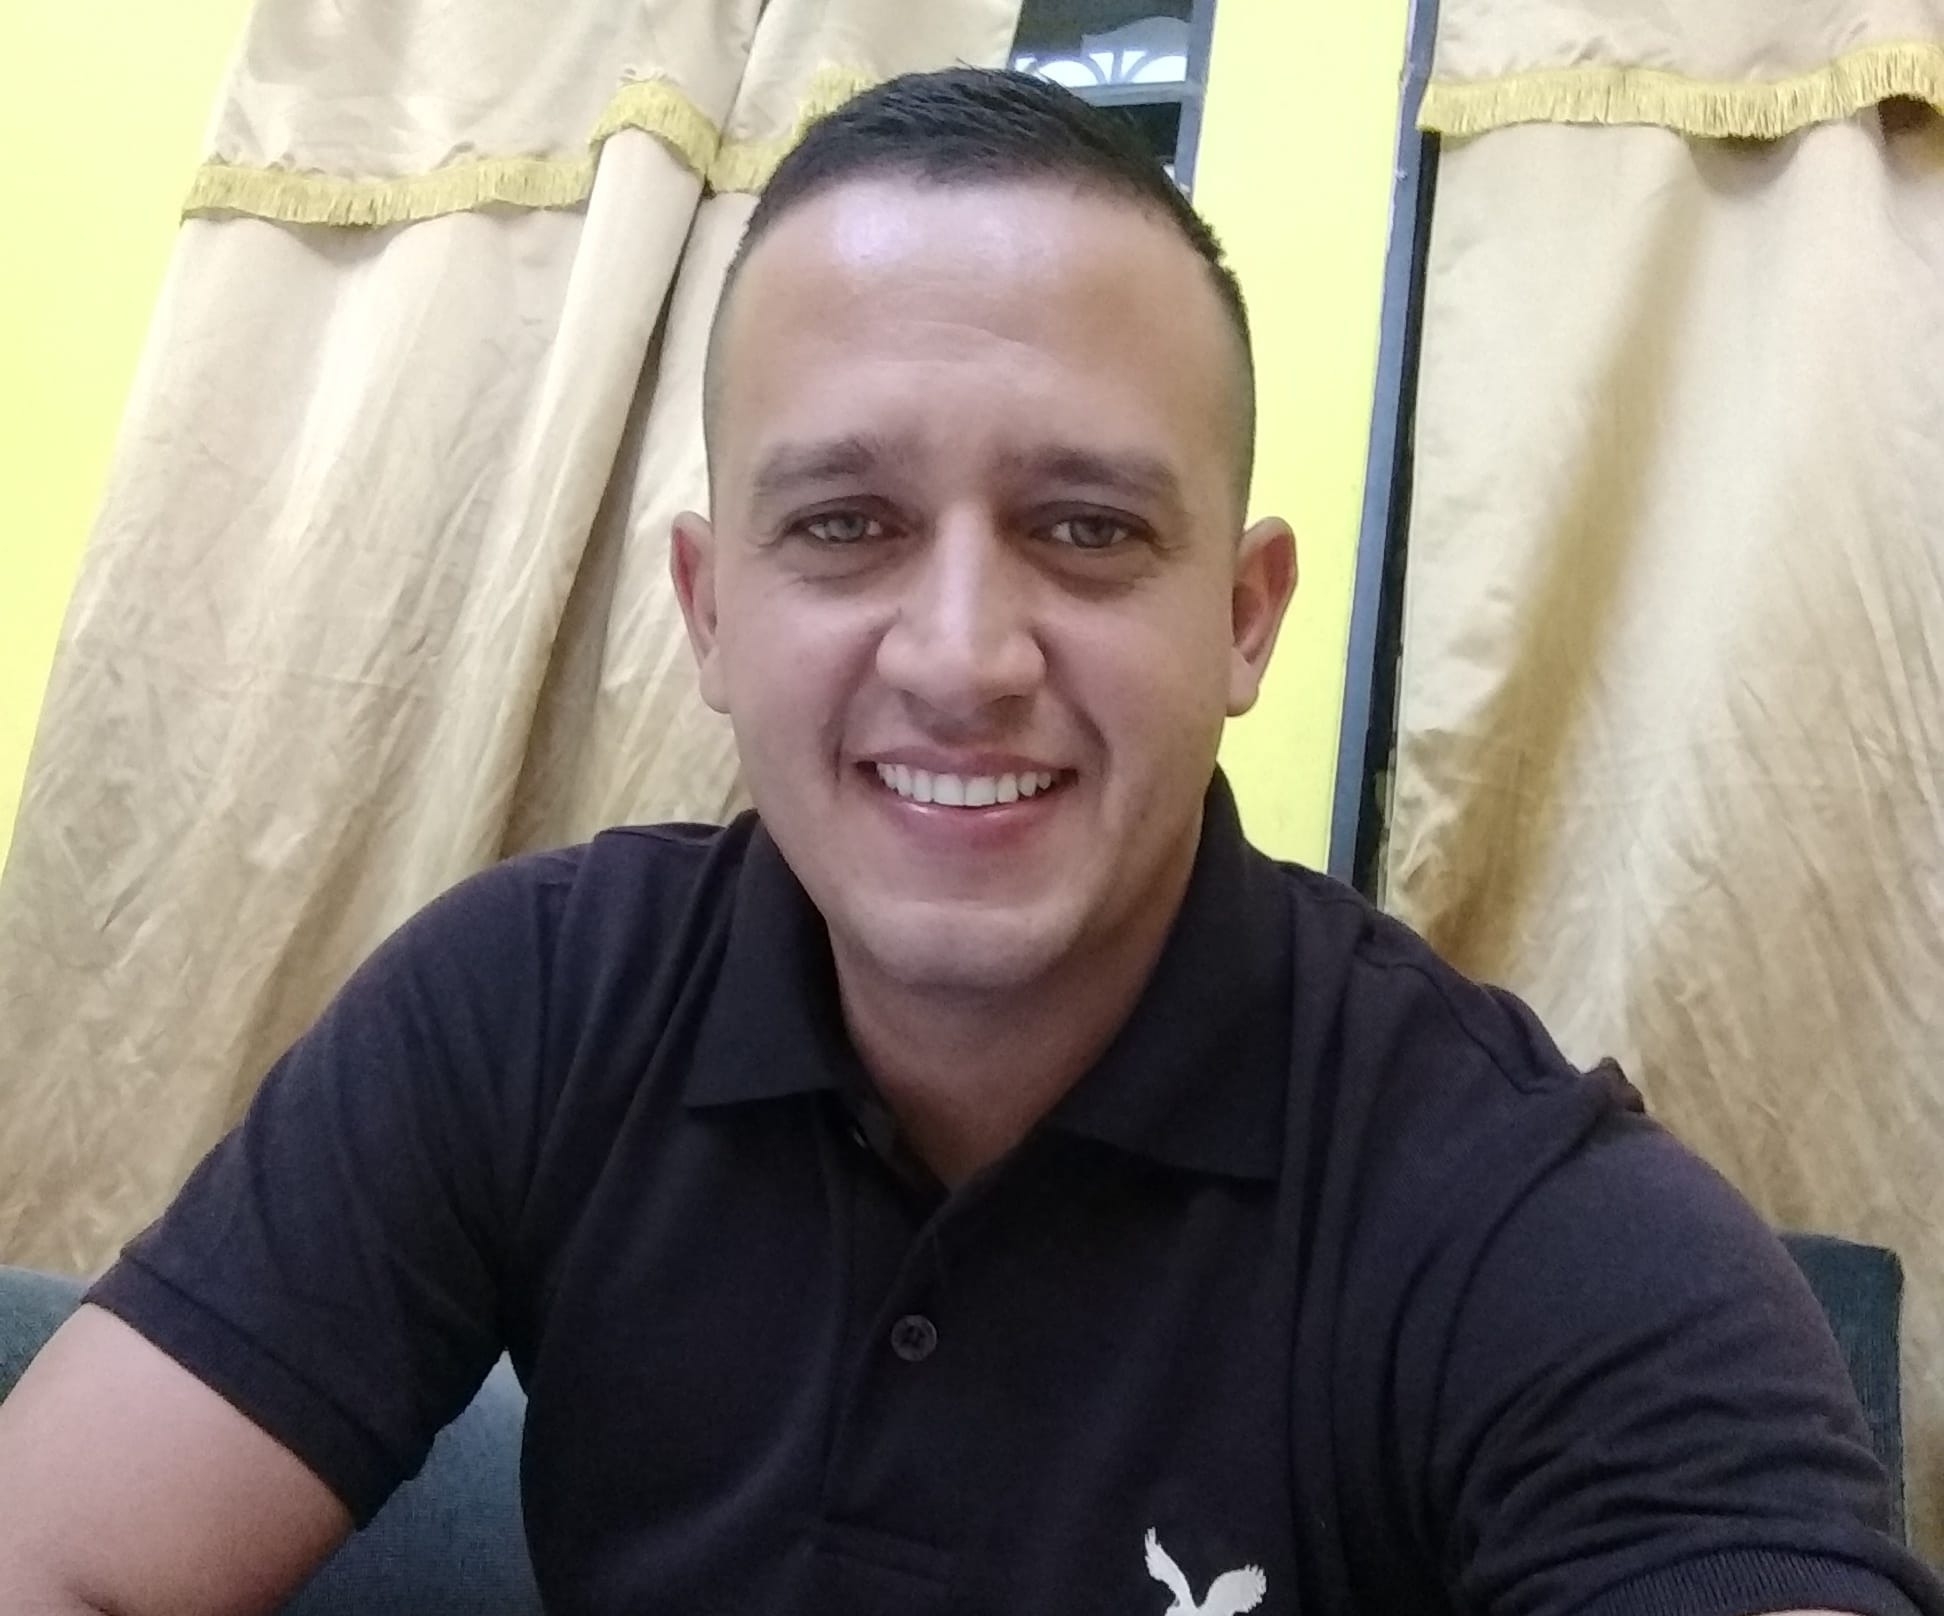 Edgar Ernesto Orellana Ruiz, concejal tercero electo por el partido Valor en el municipio de Guastatoya, El Progreso, murió en forma violenta la noche del 14 de septiembre. (Foto Prensa Libre: Facebook).